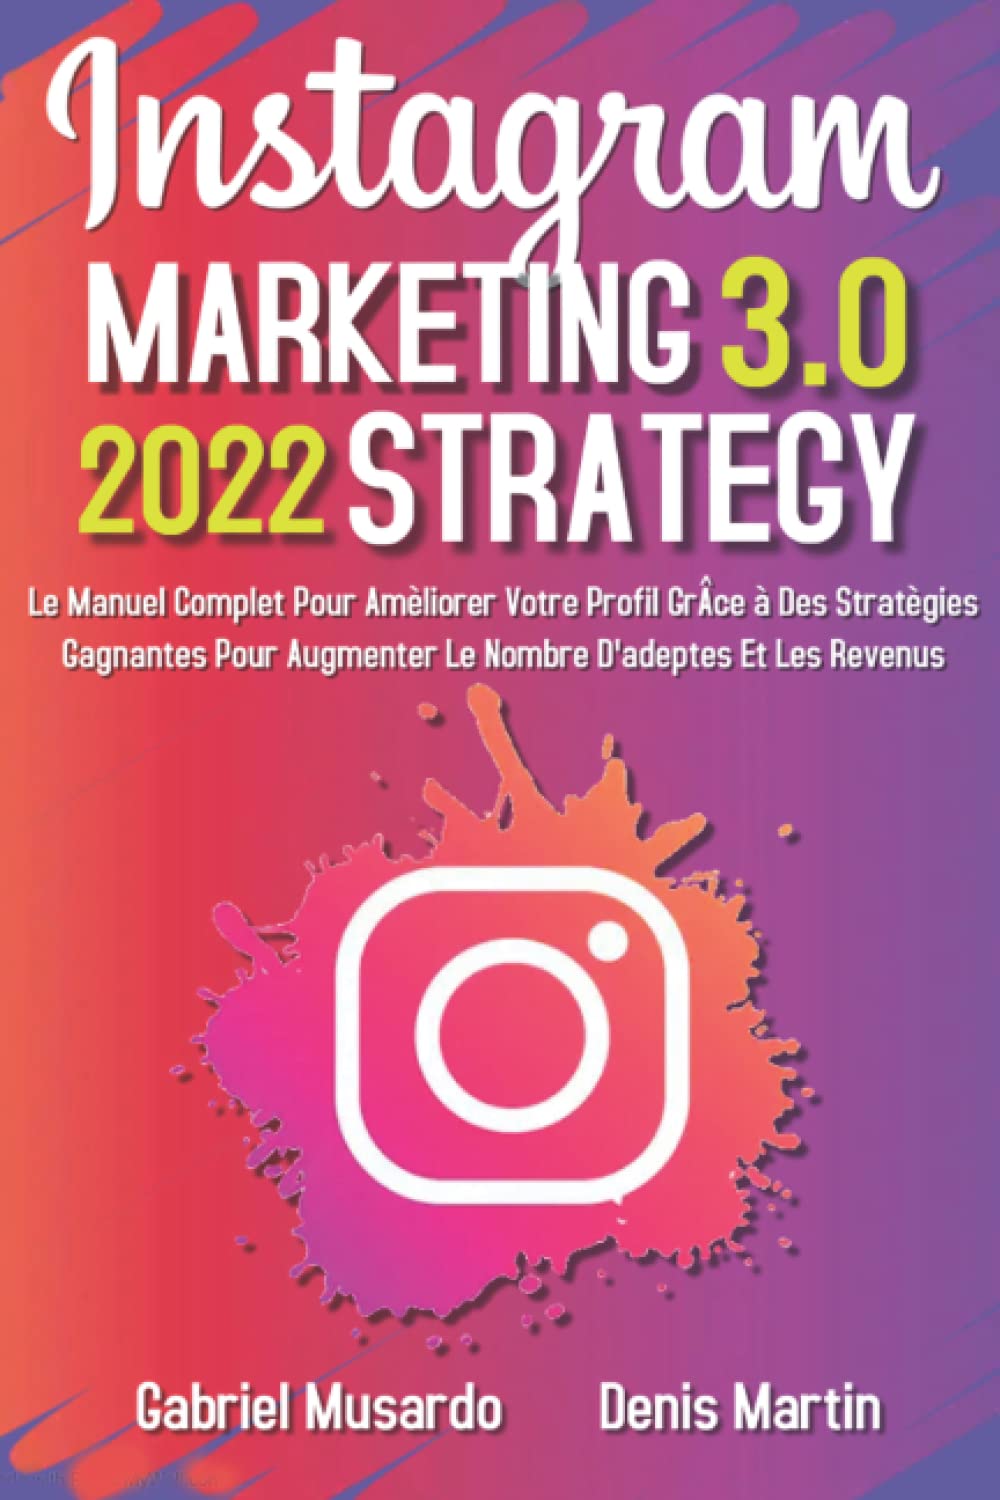 Instagram Marketing-Strategy 3.0; Le Manuel Complet Pour Améliorer Votre Profil Grâce à Des Stratégies Gagnantes Pour Augmenter le Nombre d'adeptes et Les Revenus